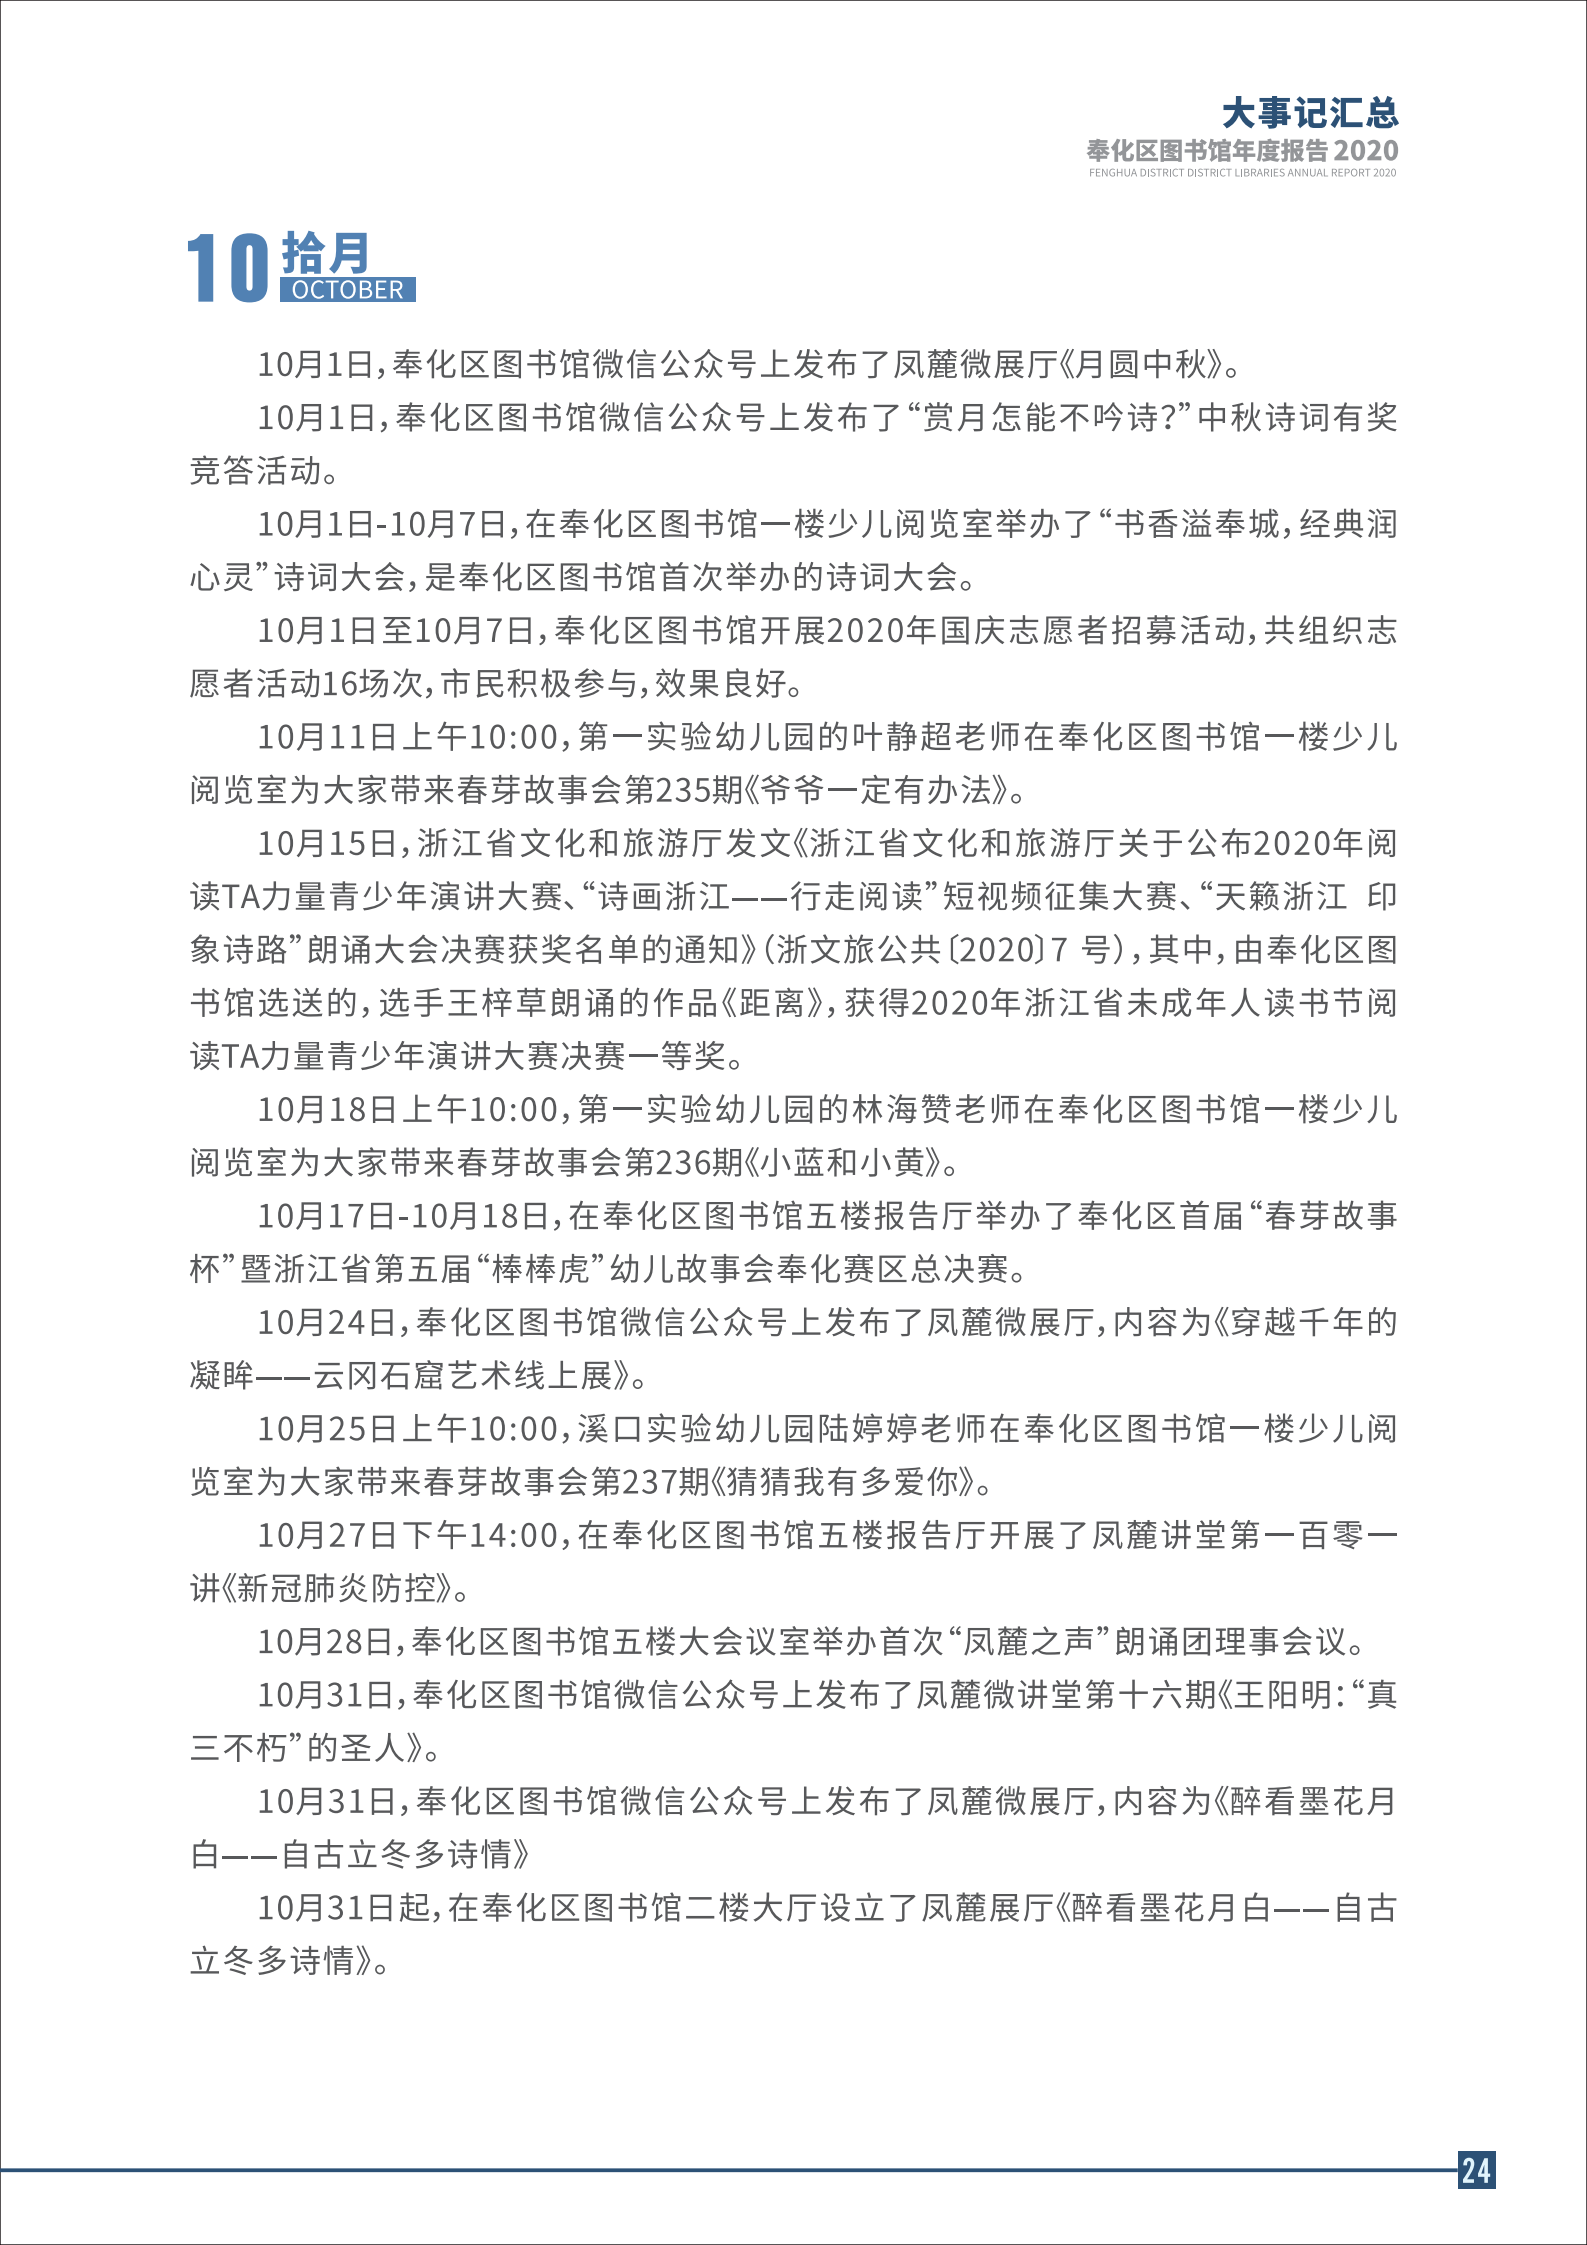 宁波市奉化区图书馆2020年年度报告 终稿_24.png